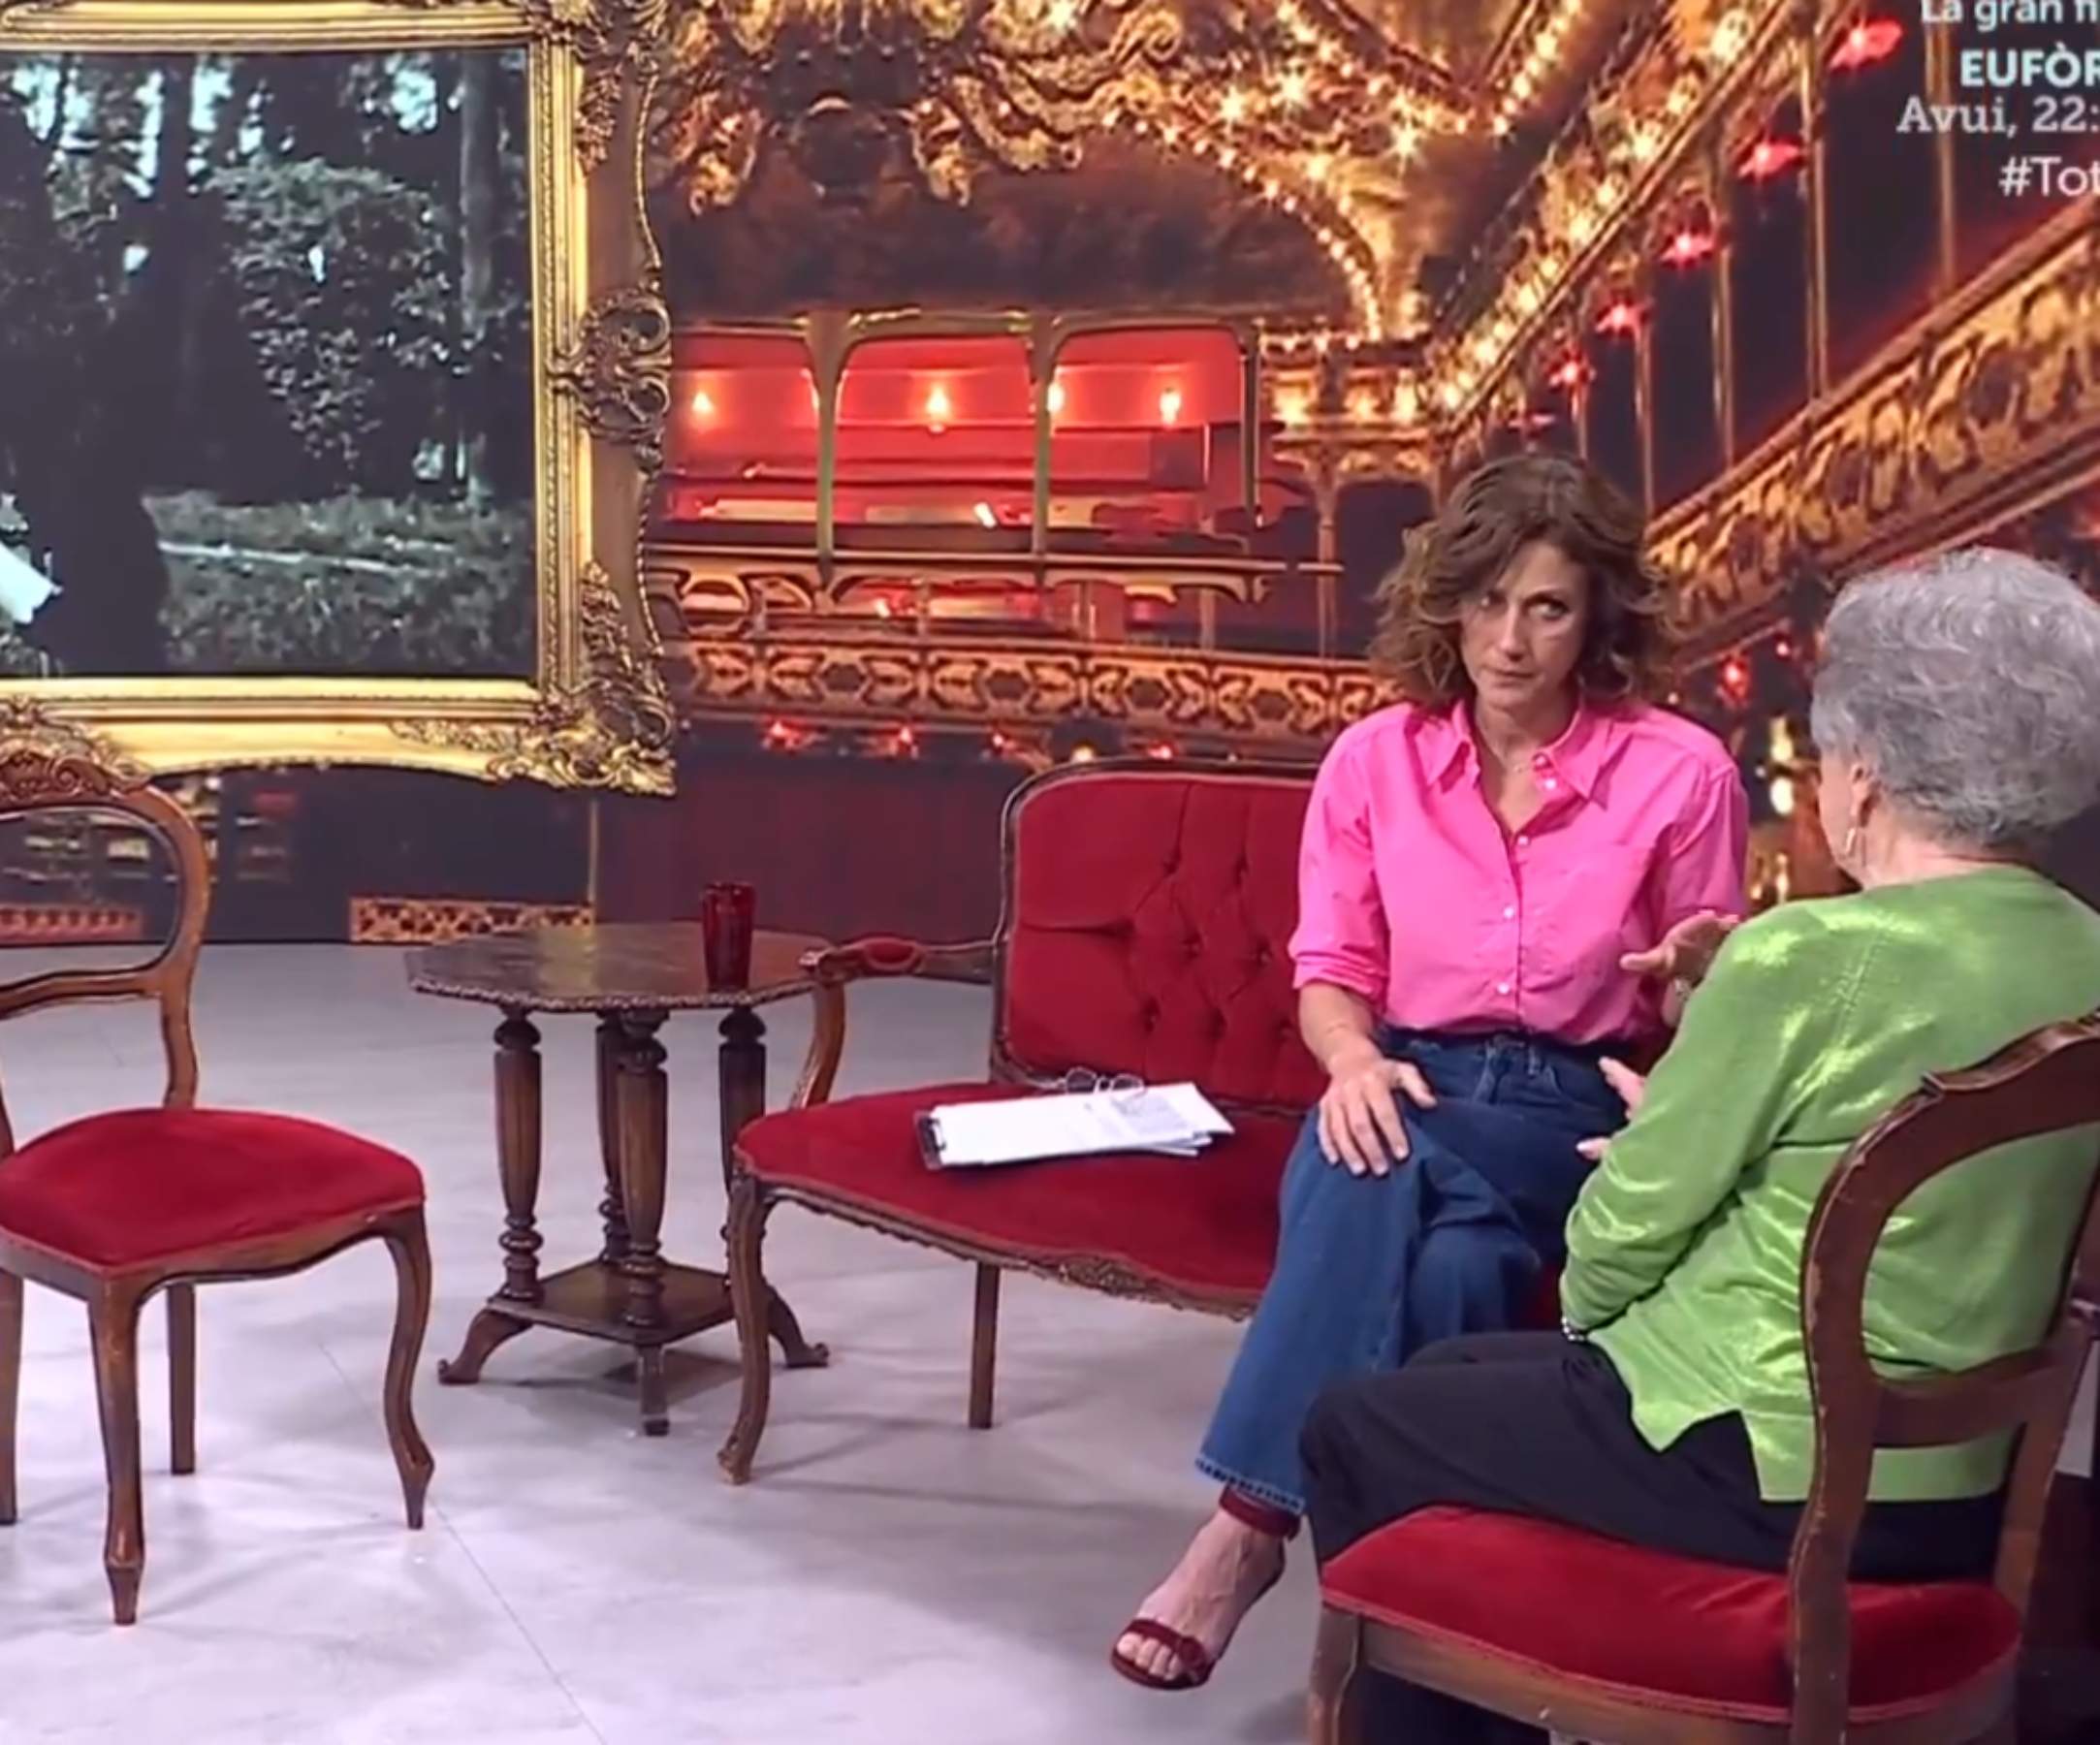 L'emotiva història d'amor narrada a TV3: "El vaig conèixer amb 73 anys, mai és tard"